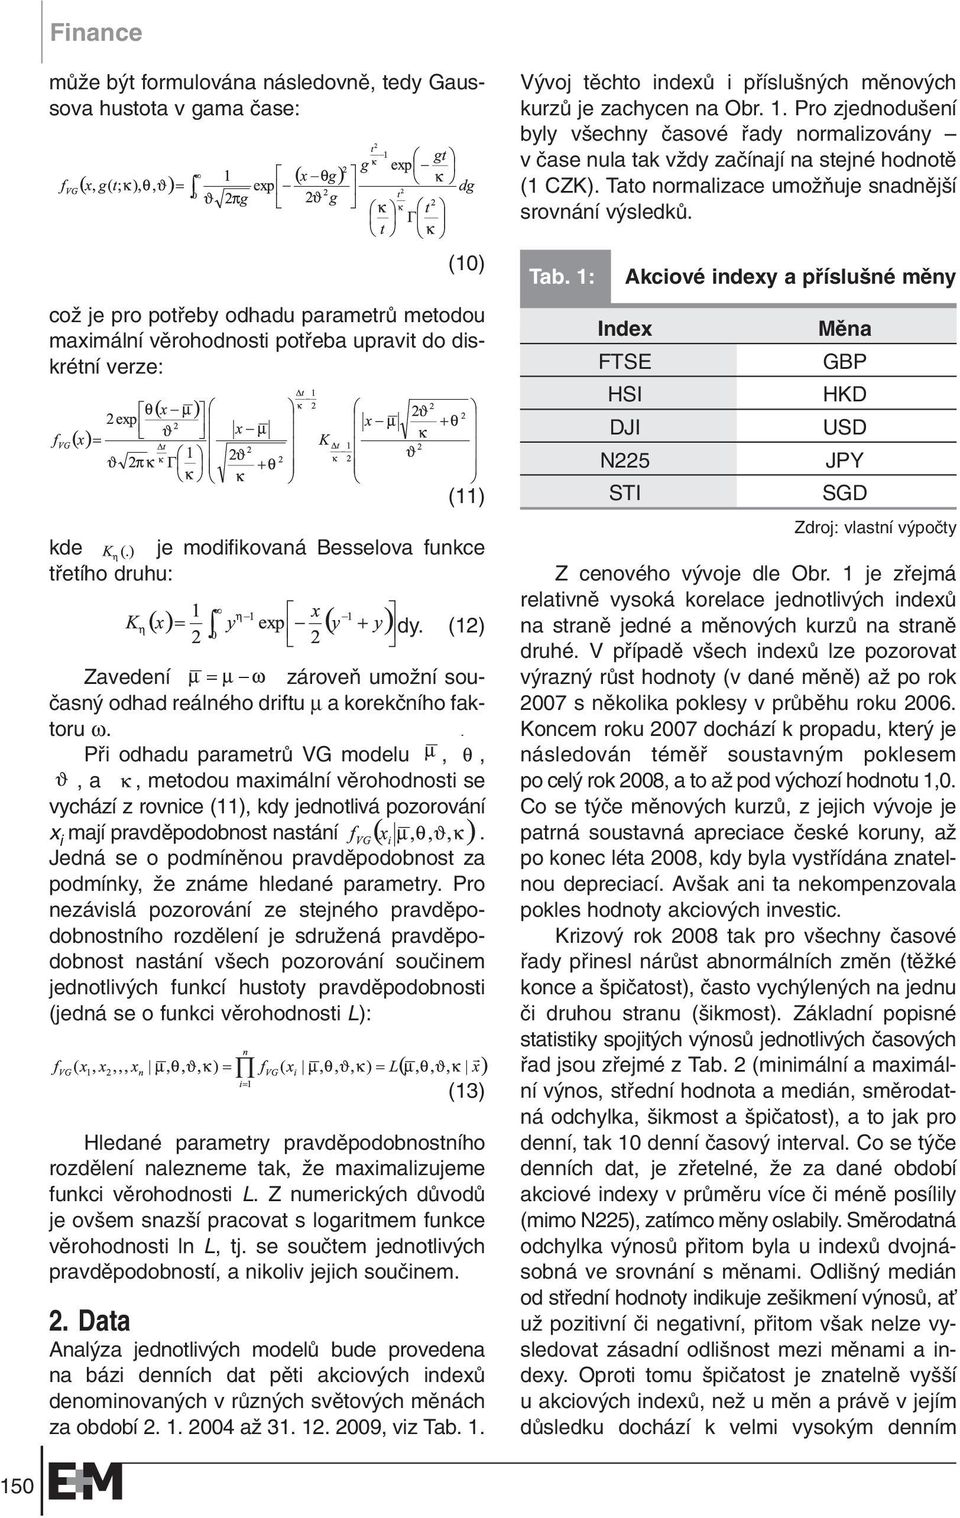 Pfii odhadu parametrû VG modelu,,, a, metodou maximální vûrohodnosti se vychází z rovnice (11), kdy jednotlivá pozorování x i mají pravdûpodobnost nastání.